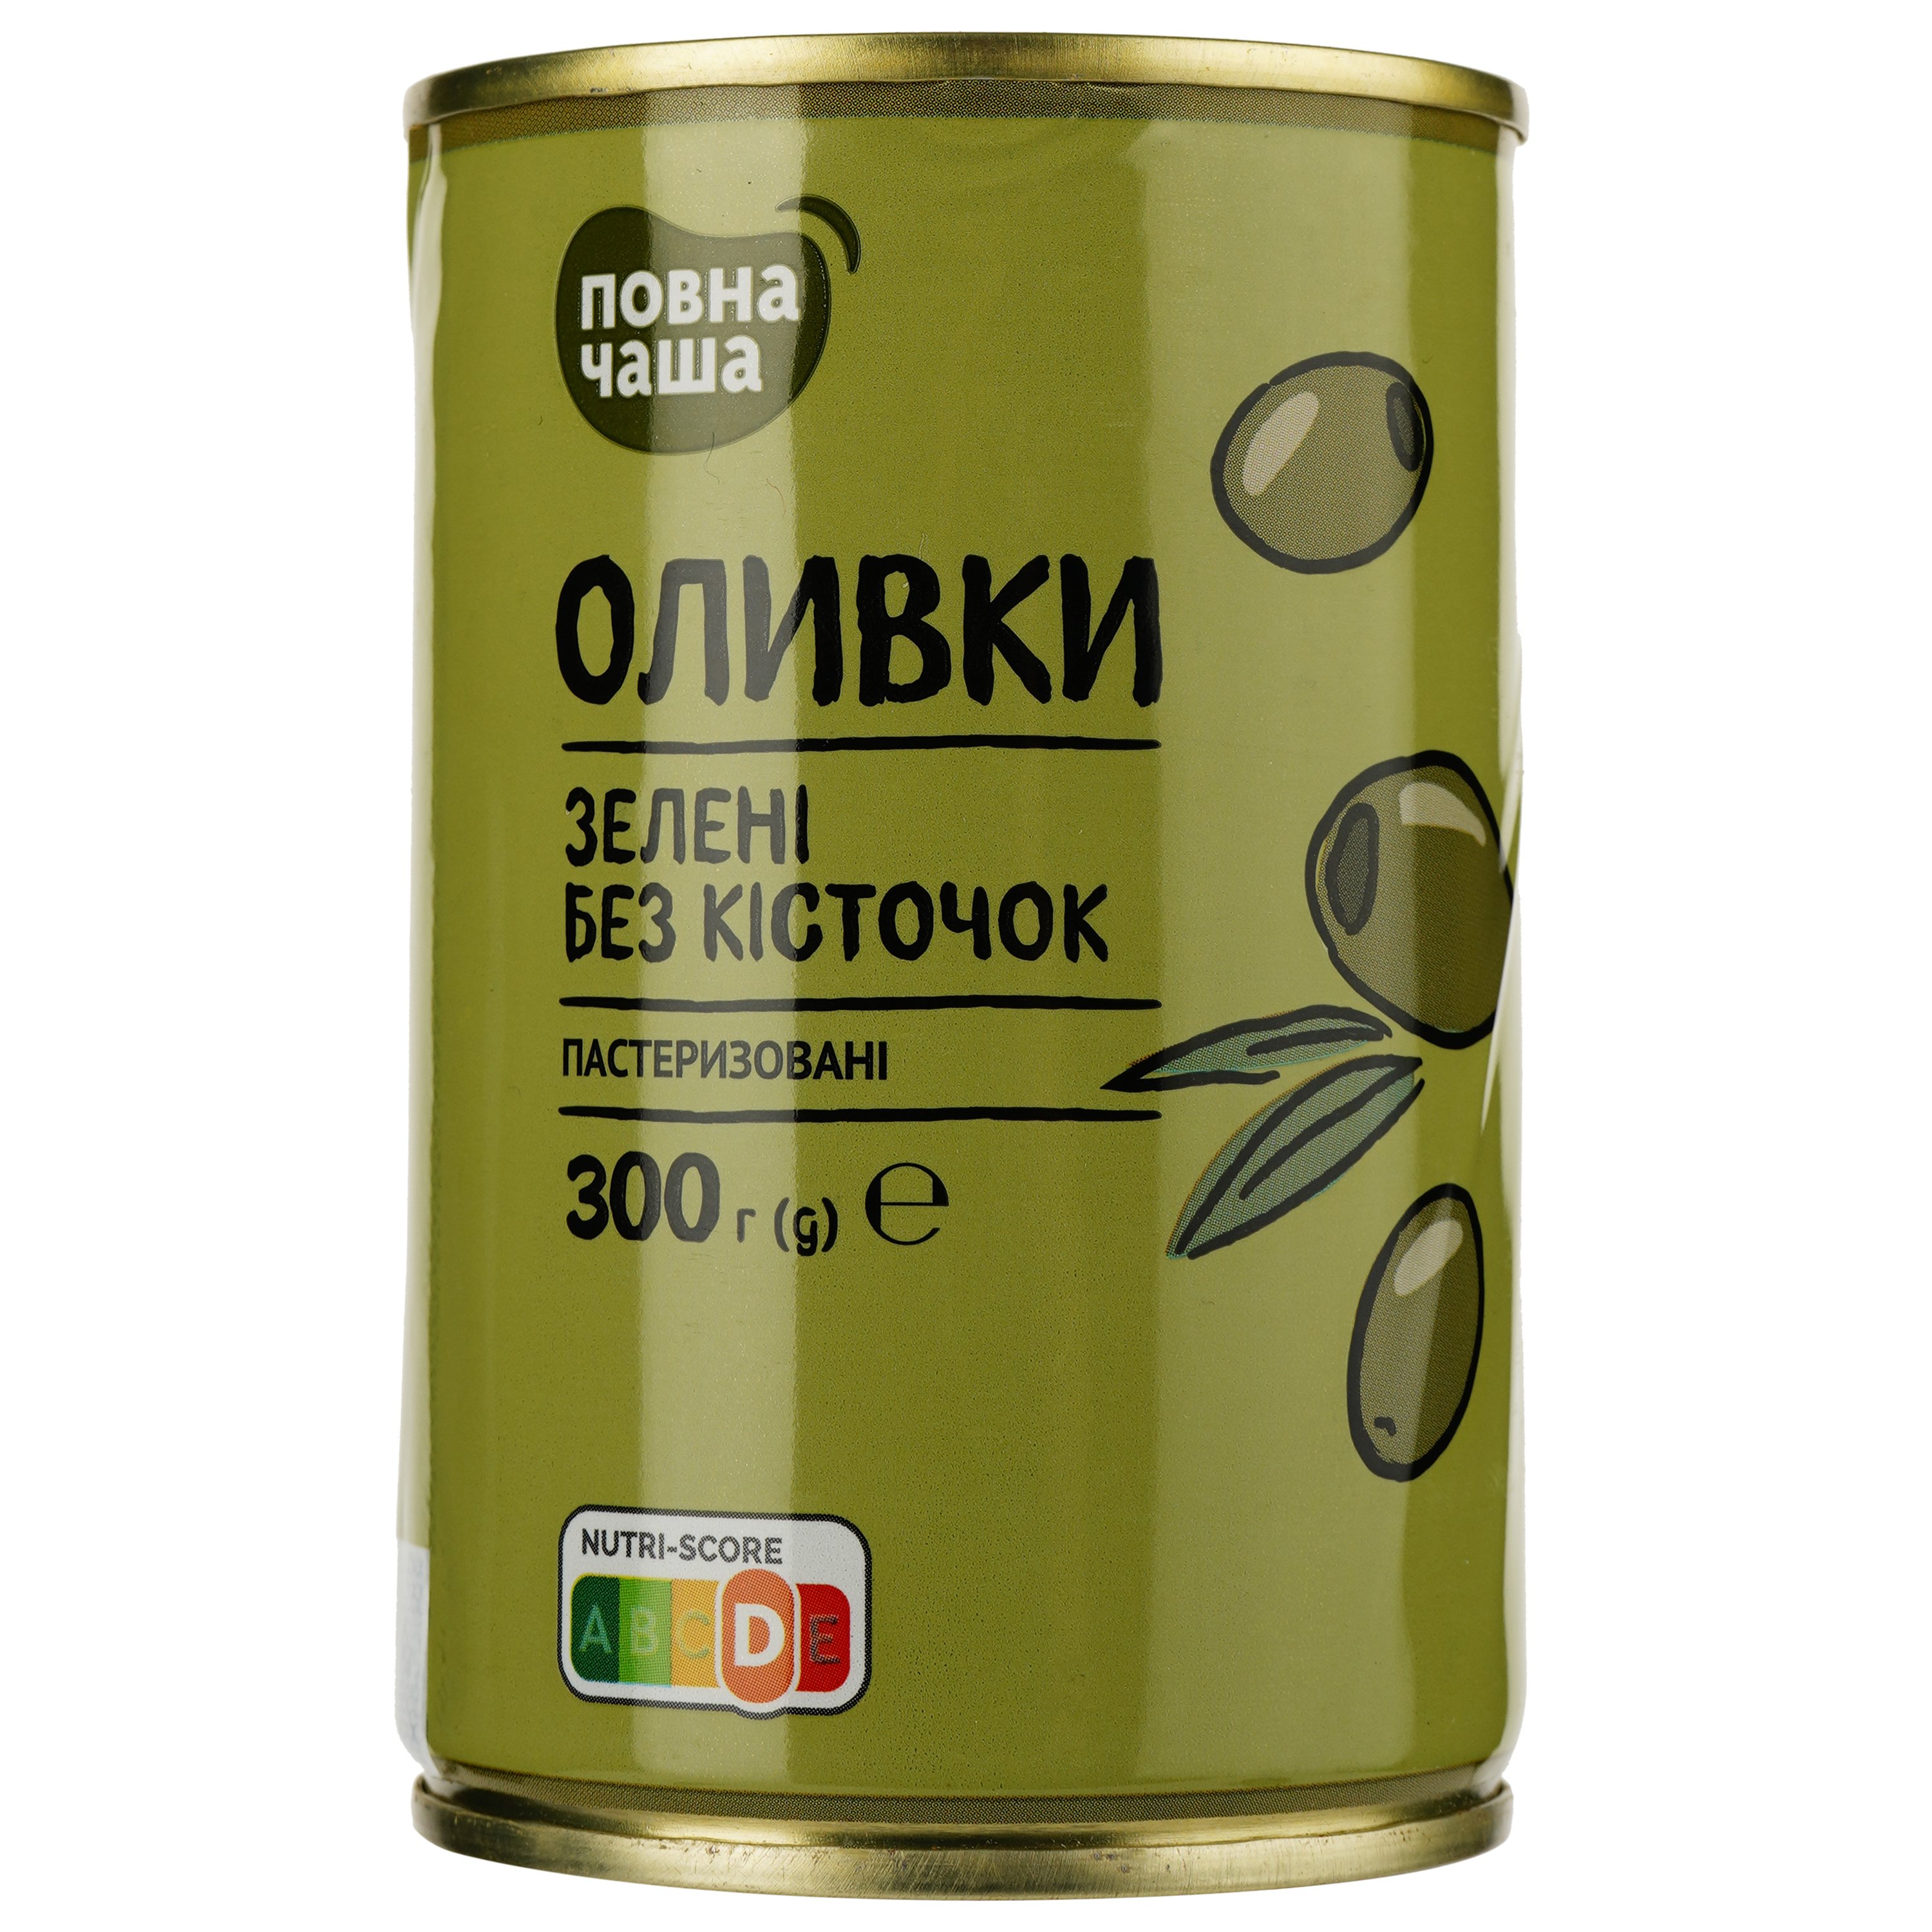 Оливки Повна Чаша зеленые без косточки пастеризованные 300 г (490848) - фото 1